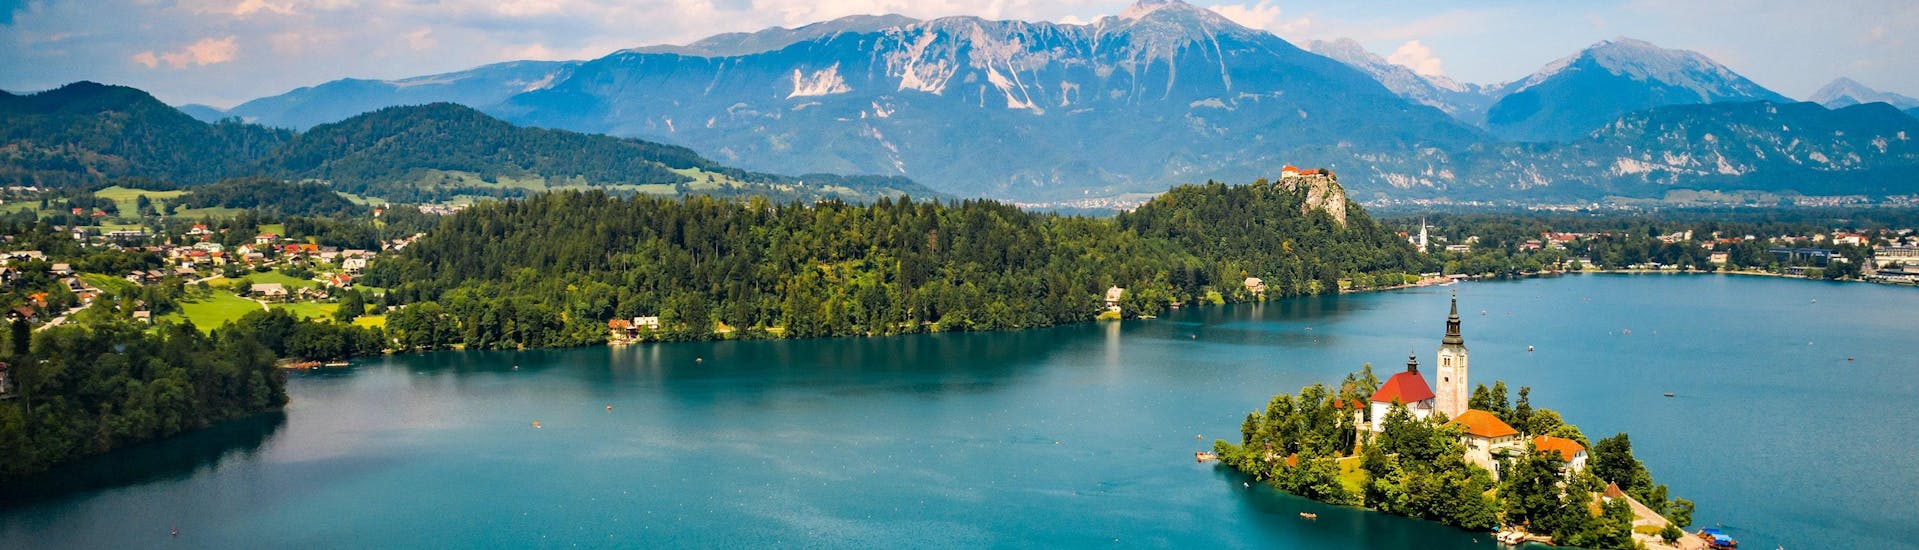 Blick auf den wunderschönen Bleder See, der ein beliebtes Ziel für das Paragliding ist.